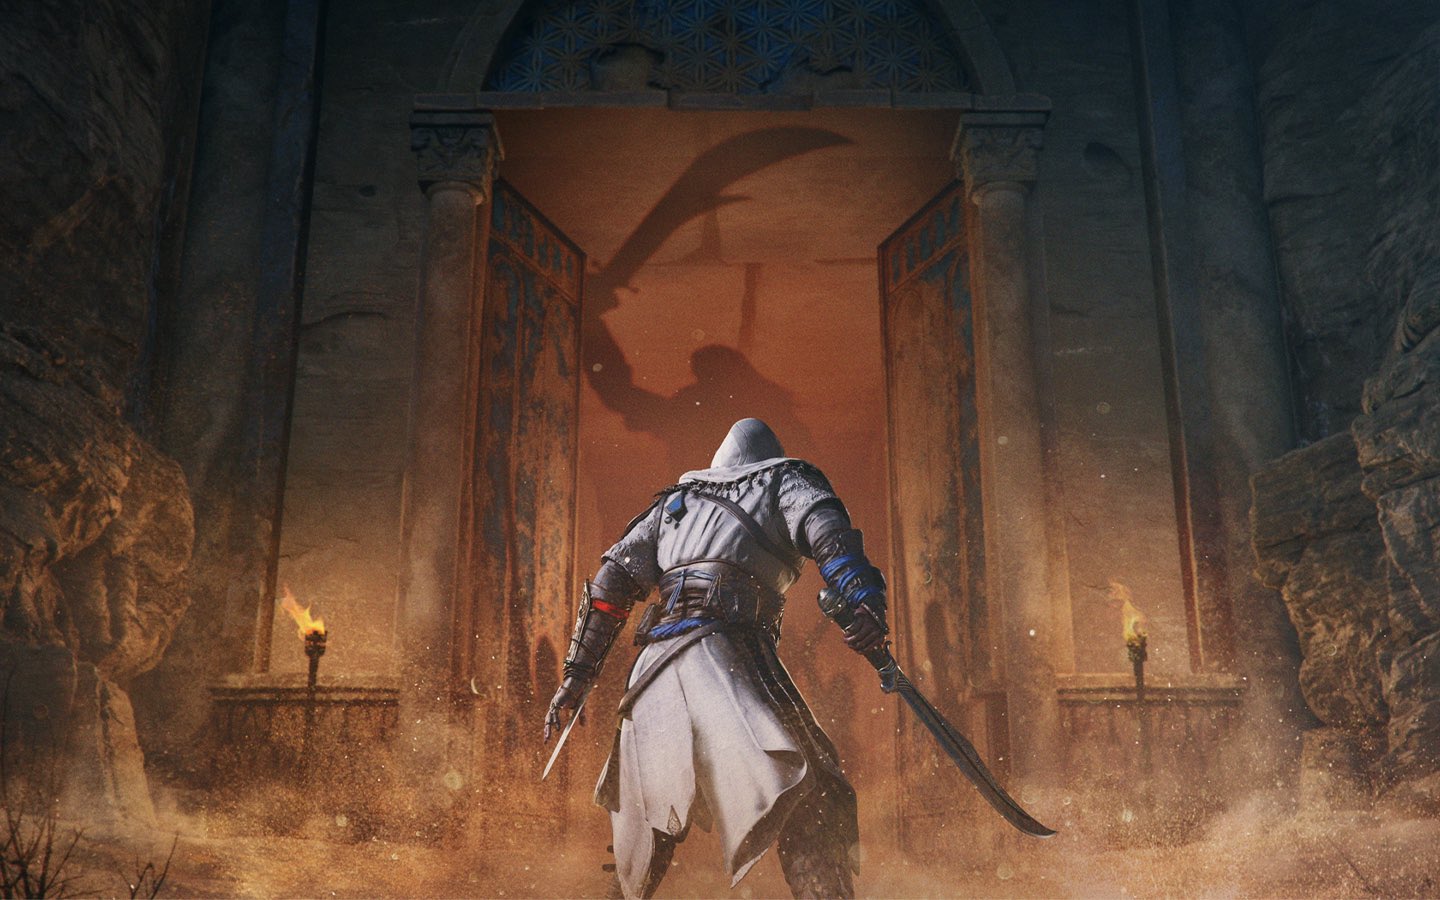 La nueva filtración de Assassin's Creed Mirage se debería a que Ubisoft Store publicó antes de tiempo una imagen promocional.